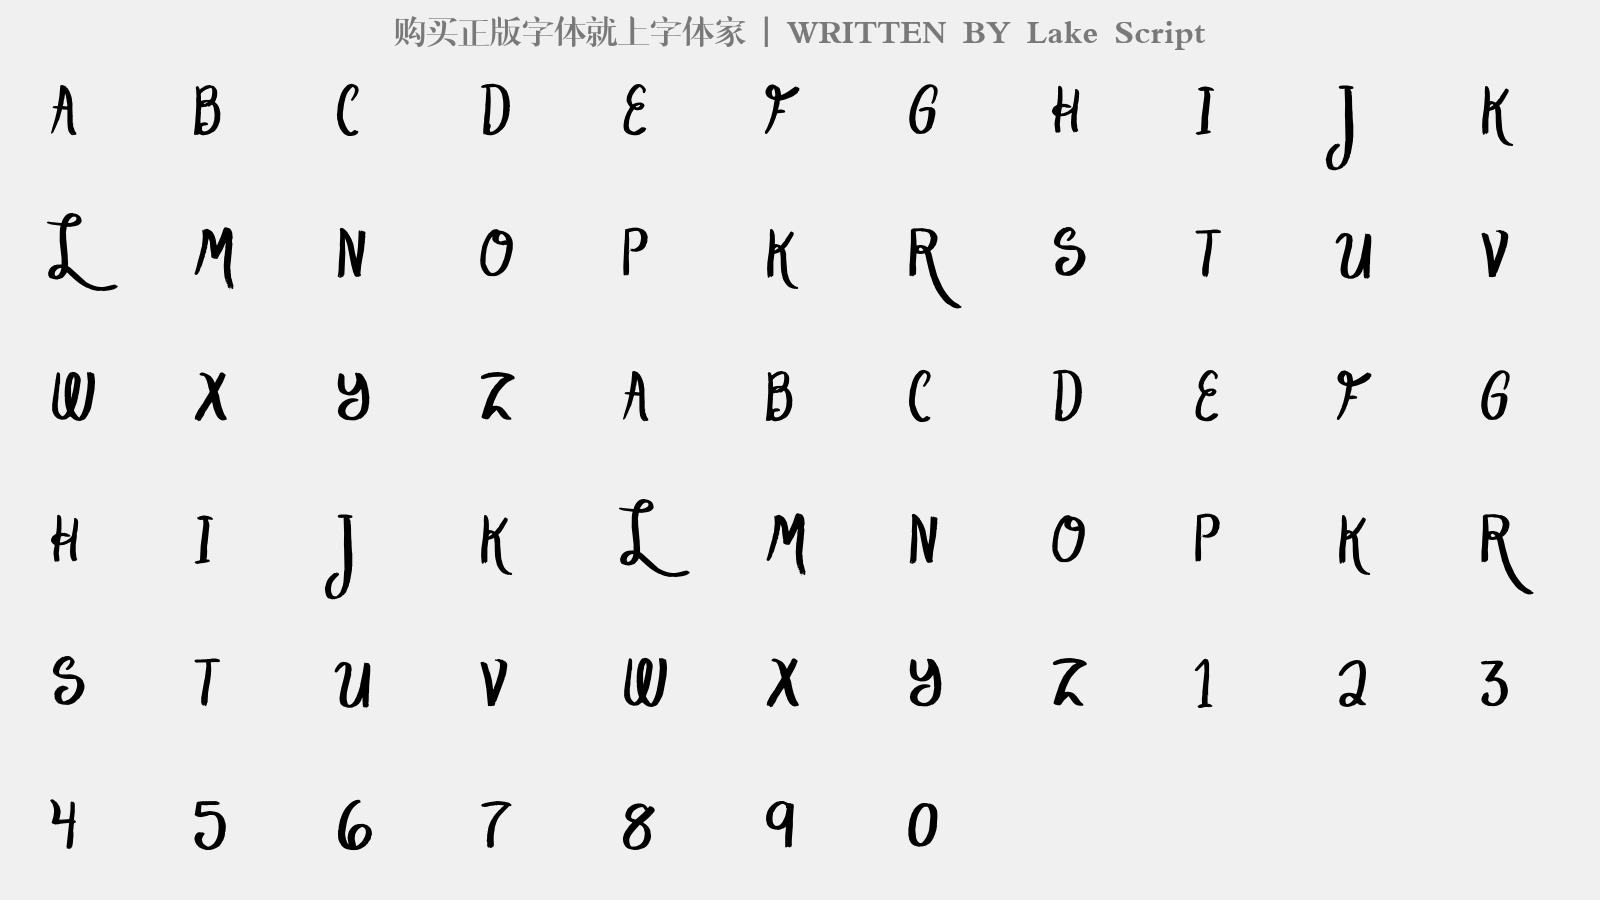 Lake Script - 大写字母/小写字母/数字